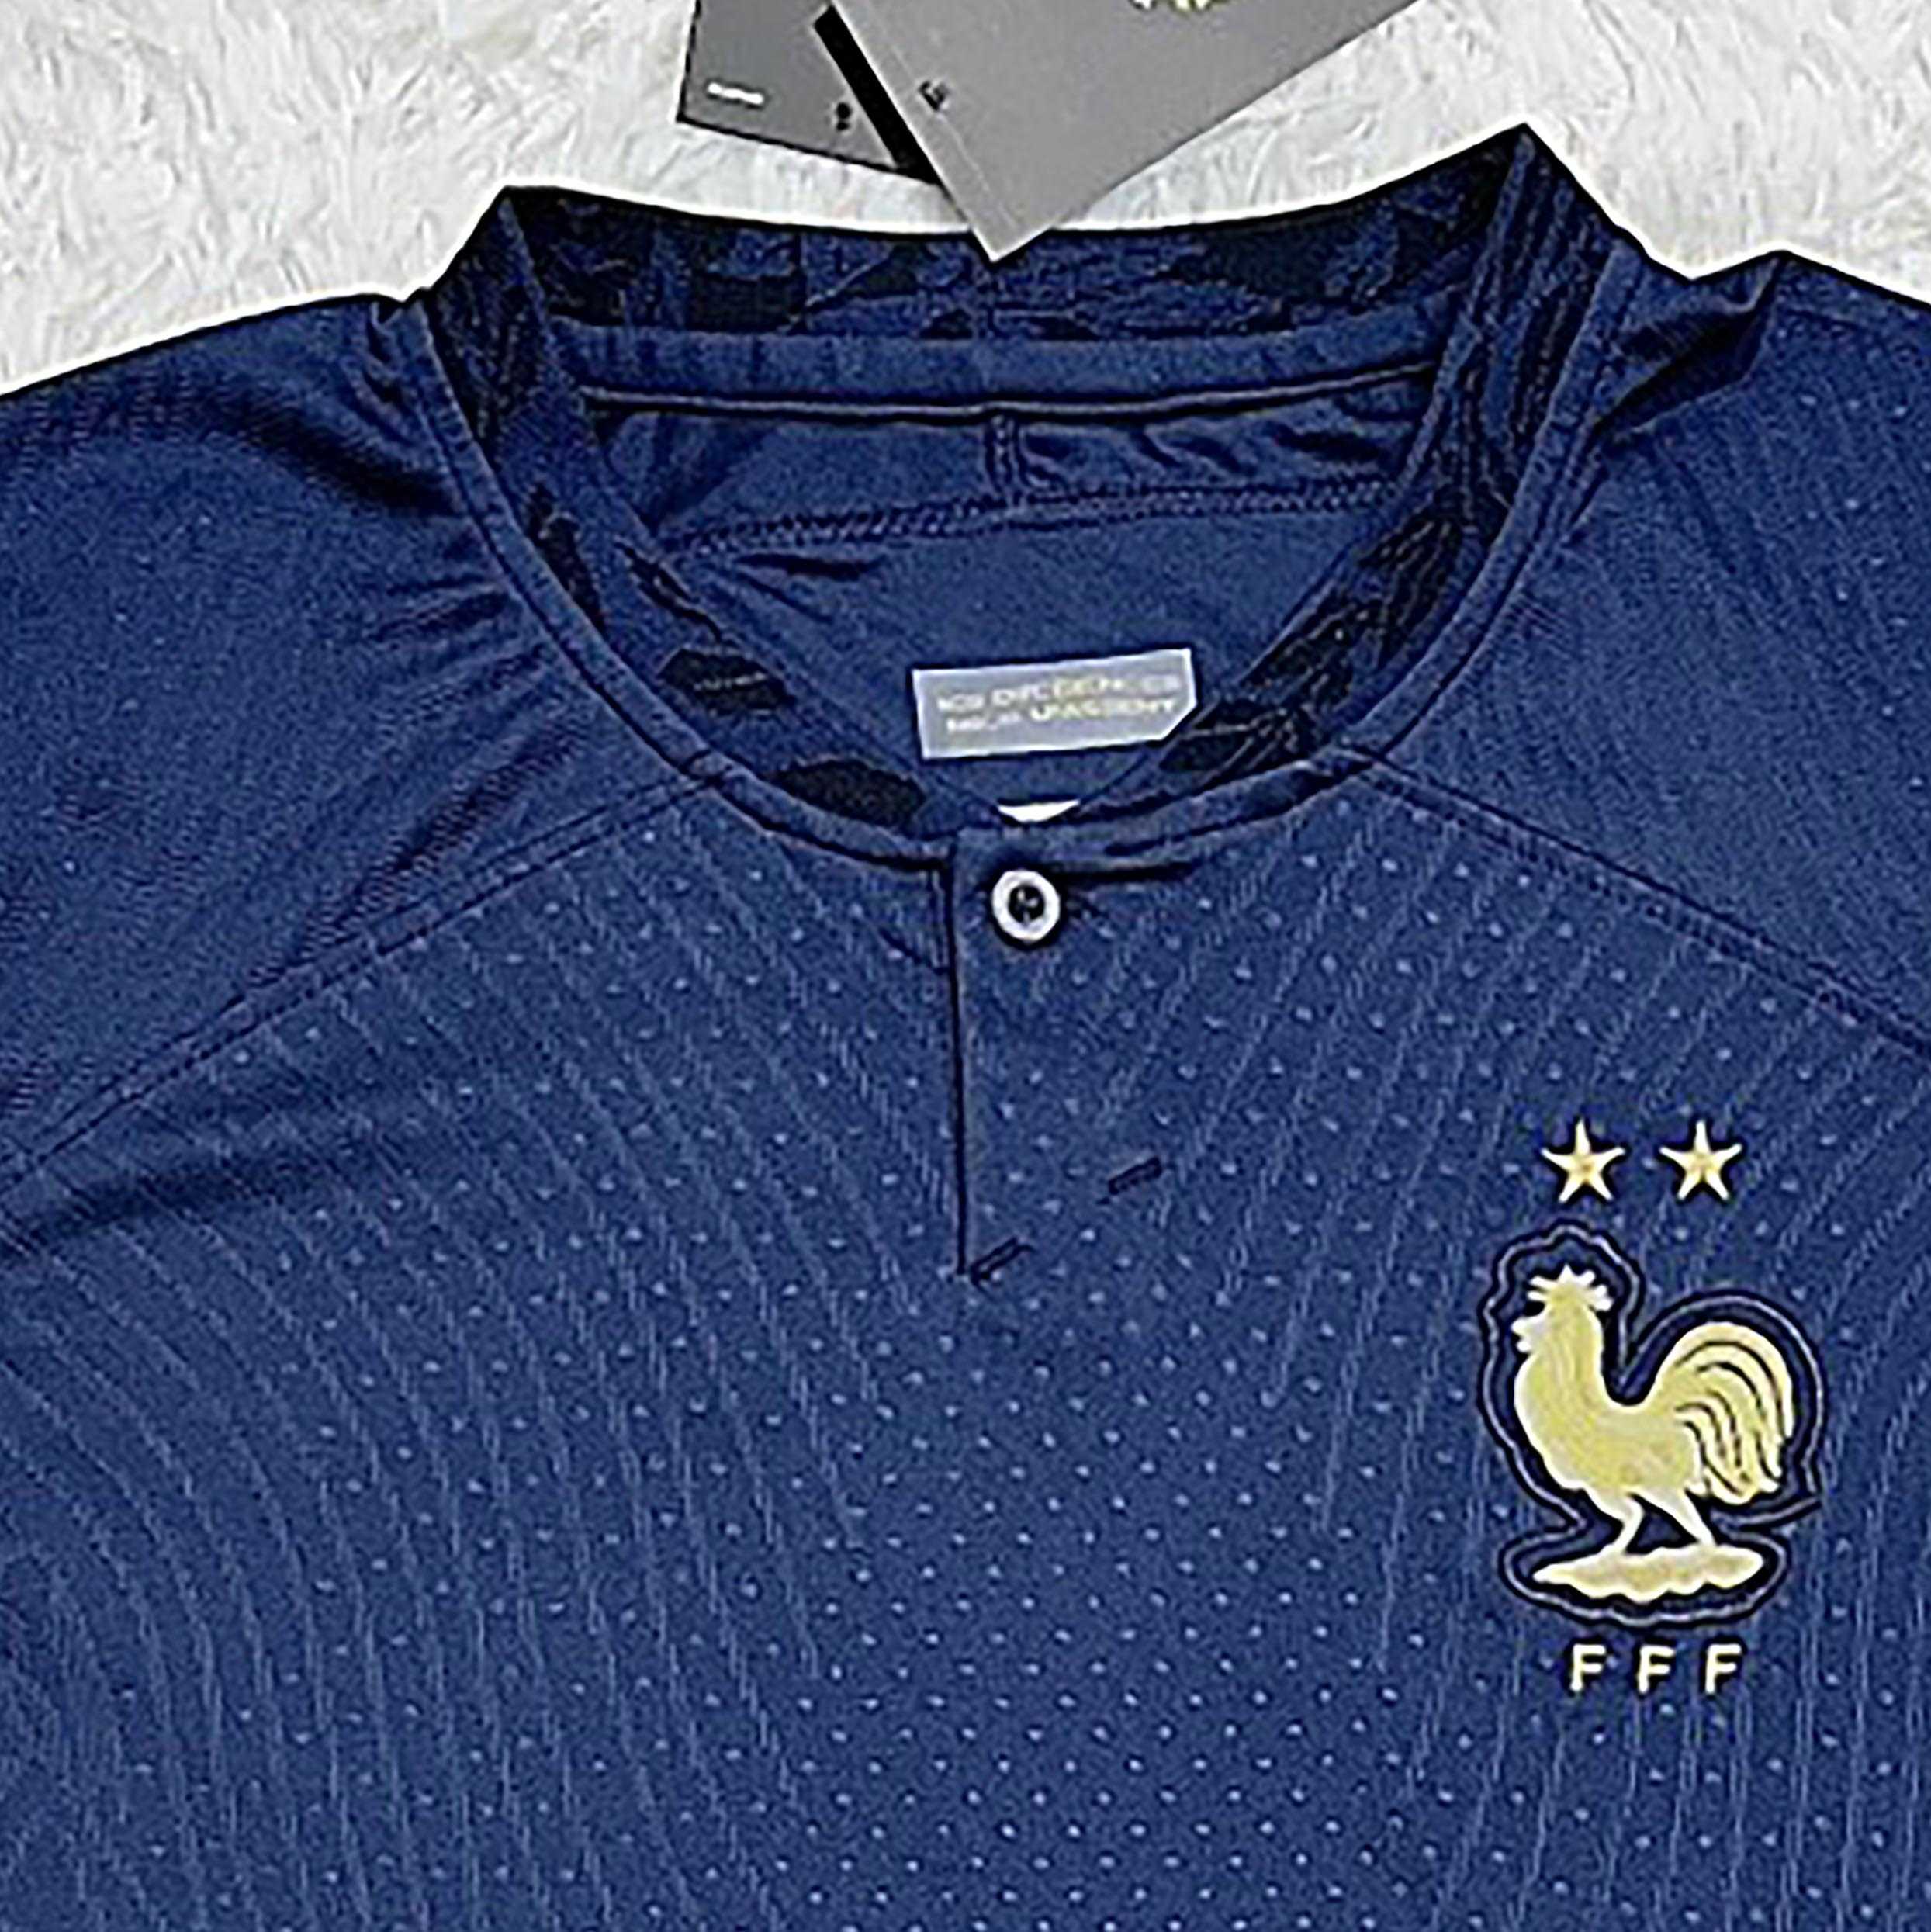 Bộ quần áo đá banh đội tuyển bóng đá Pháp world cup 2022 vải thái mới nhất mùa 22 23 xanh đen tím than 1